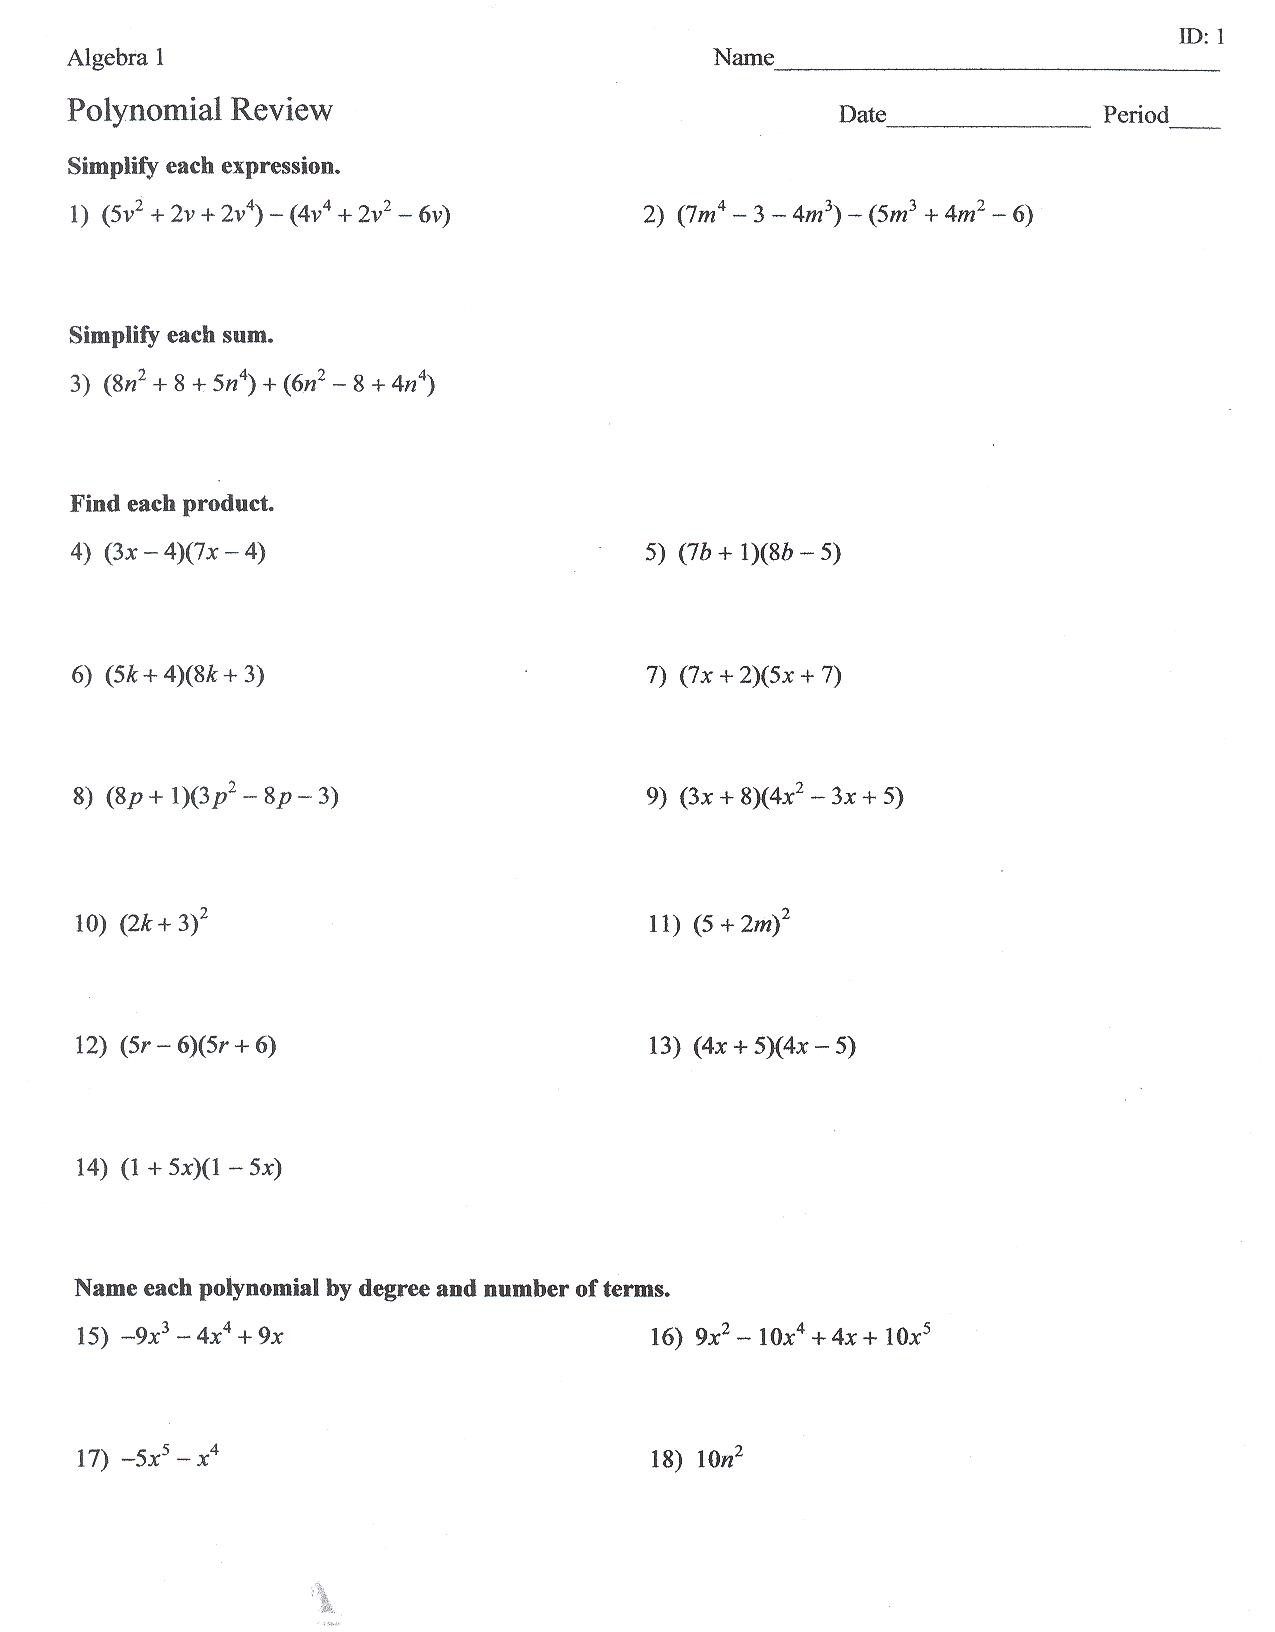 Algebra 2 Review Worksheet Algebra 2 Factoring Review Worksheet Answers